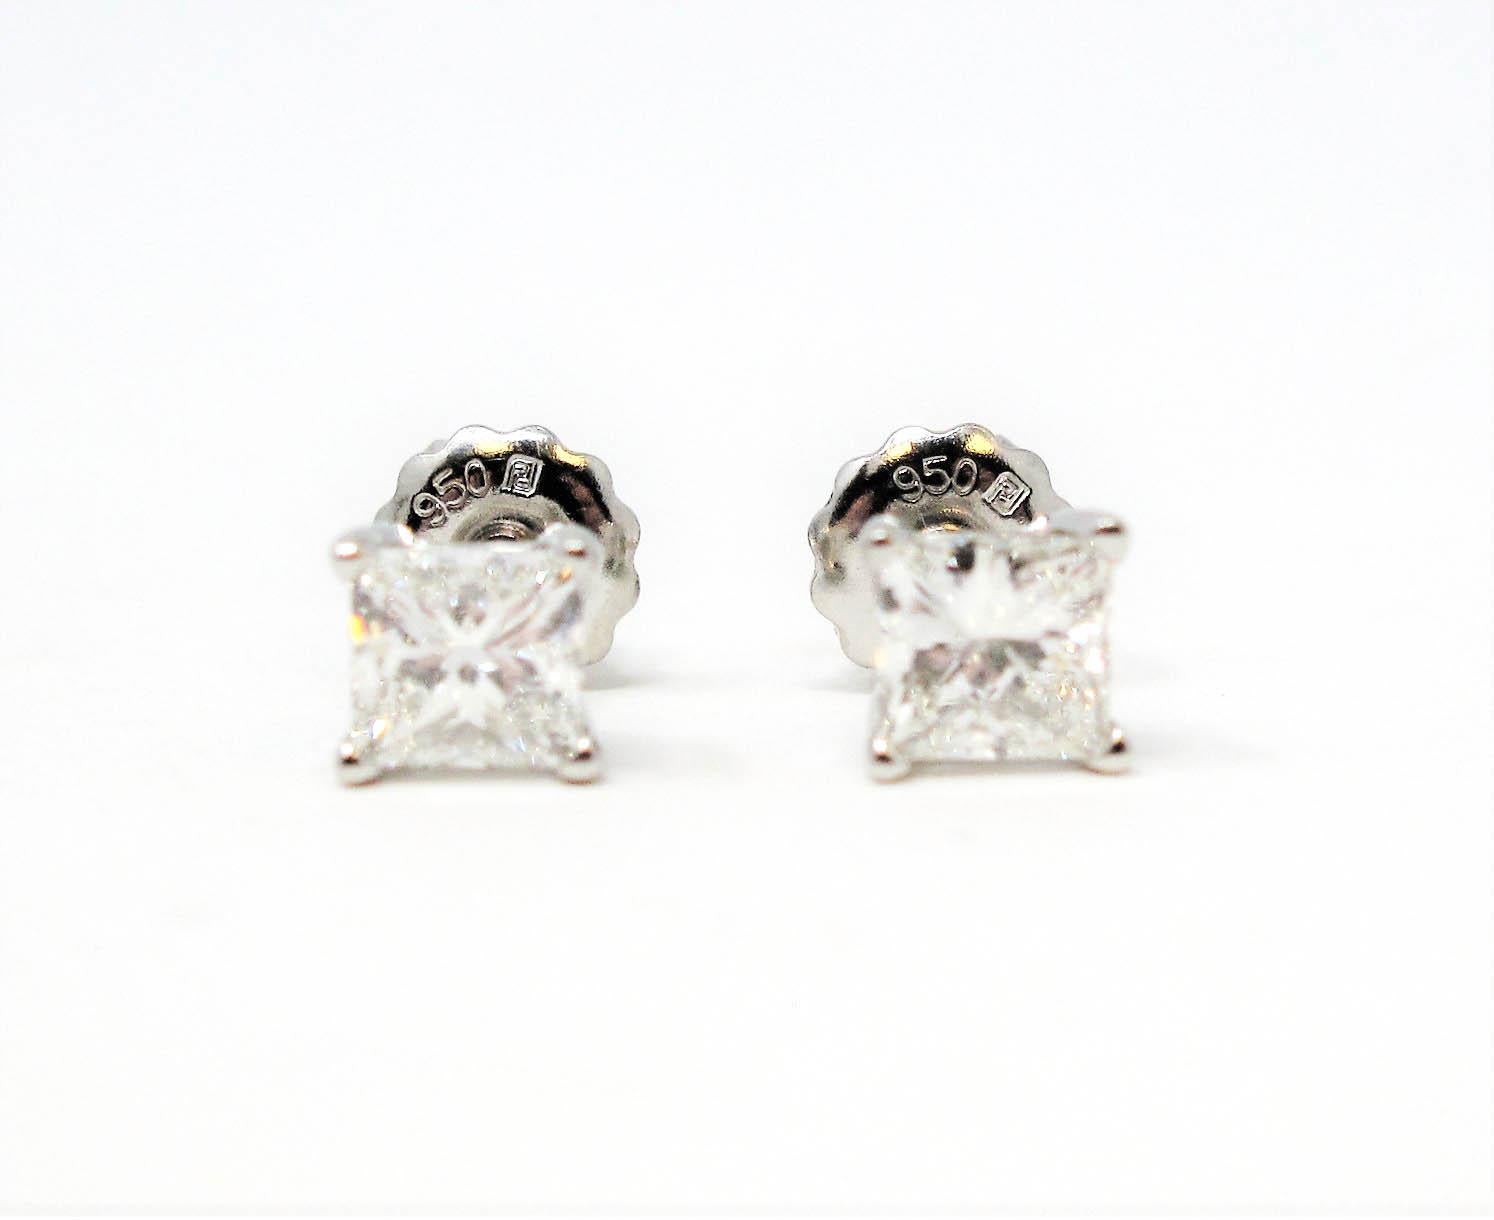 1.02 Carat Total Princess Cut Solitaire Diamond Stud Earrings in Platinum VS1 1